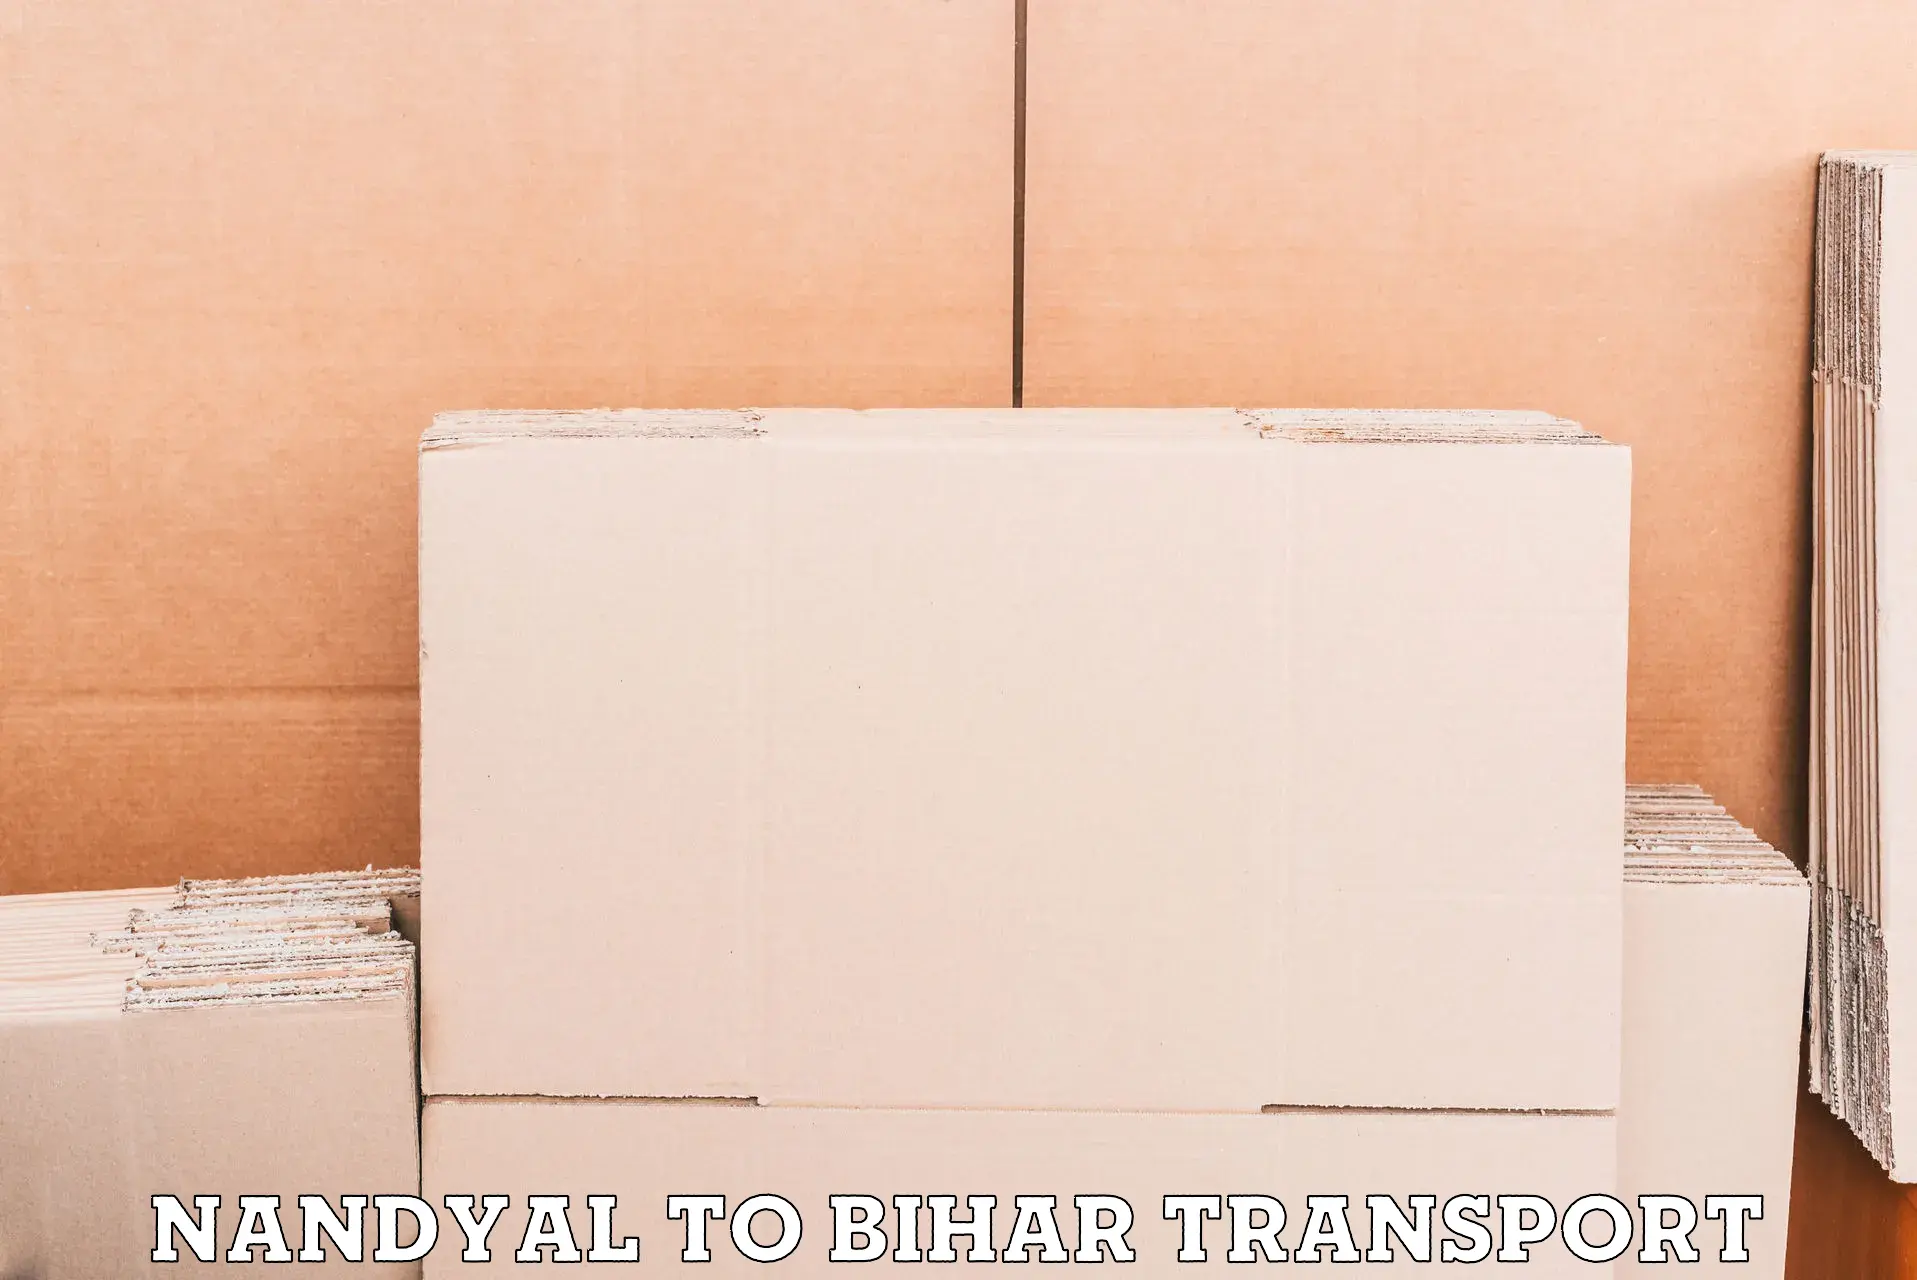 Delivery service Nandyal to Aurangabad Bihar